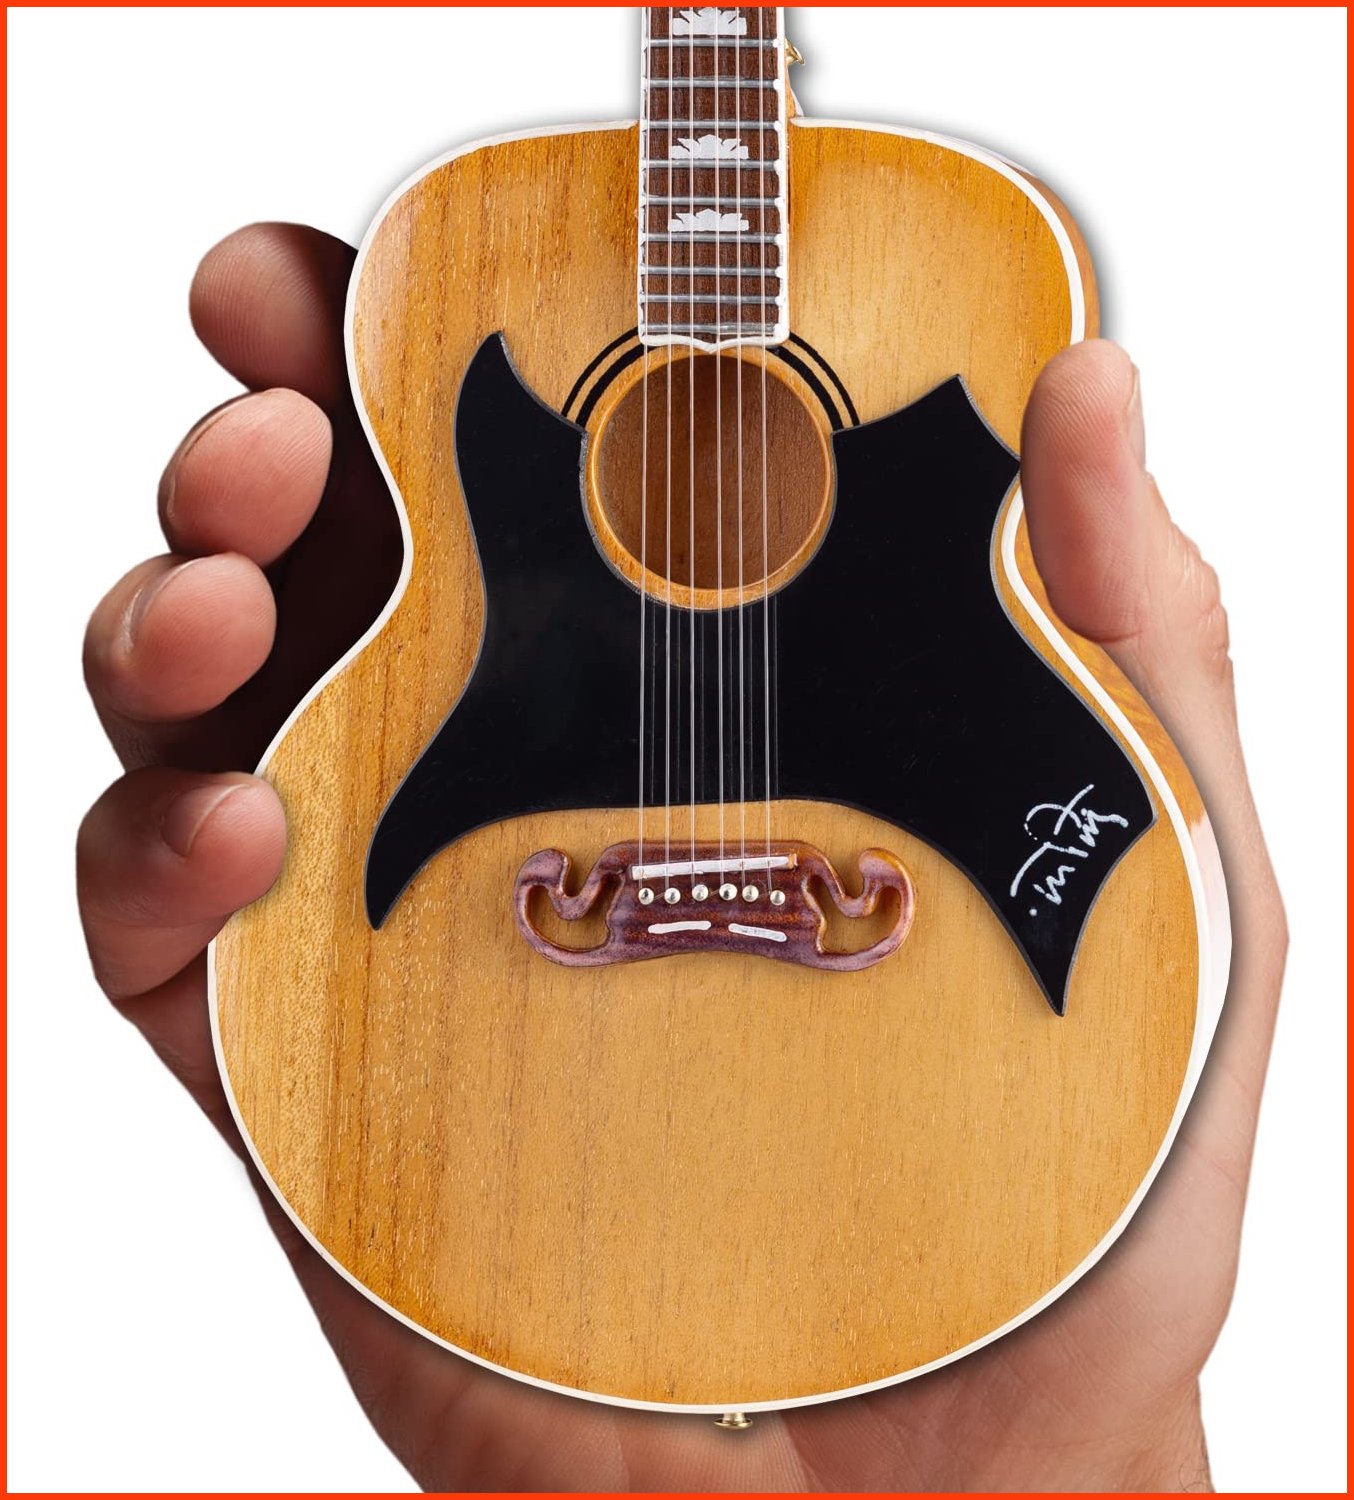 並行輸入品Gibson SJ-200 Miniature Replica Model Wildflower Antique Natural Acoustic Guitar